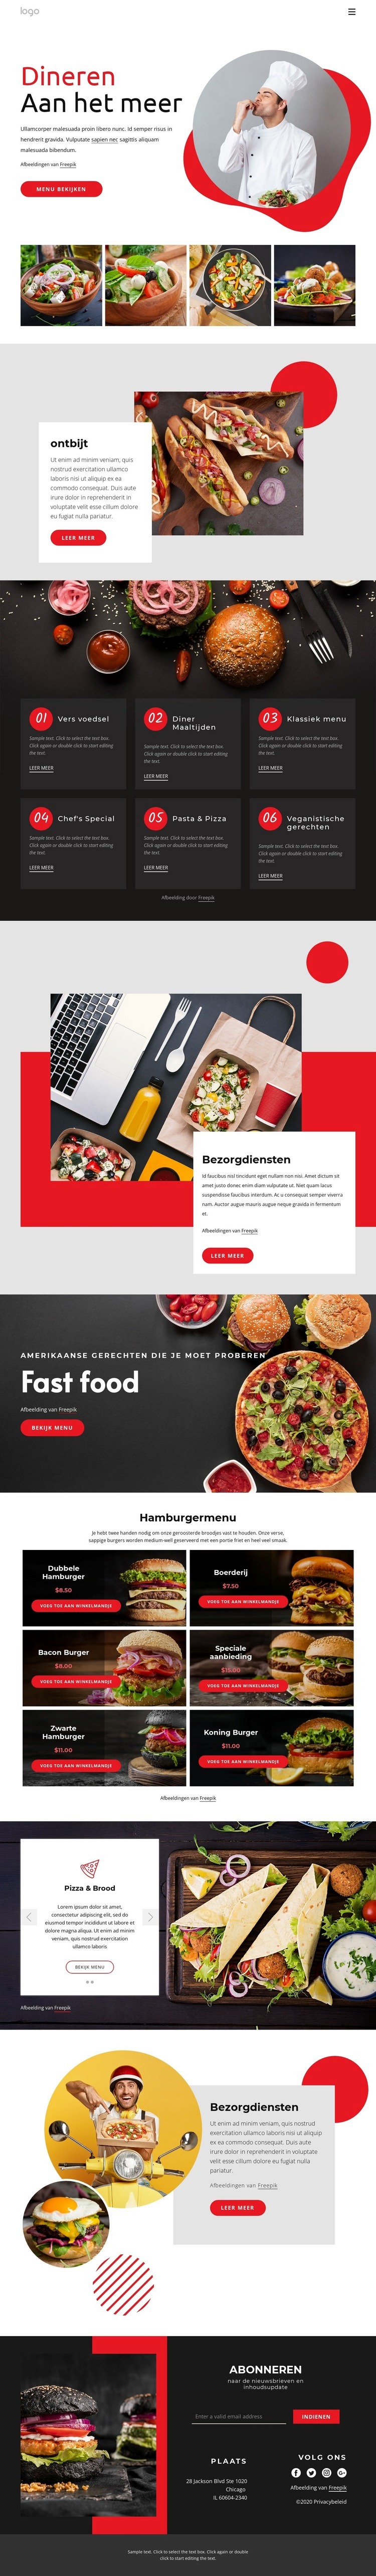 Dineren aan het meer Website ontwerp